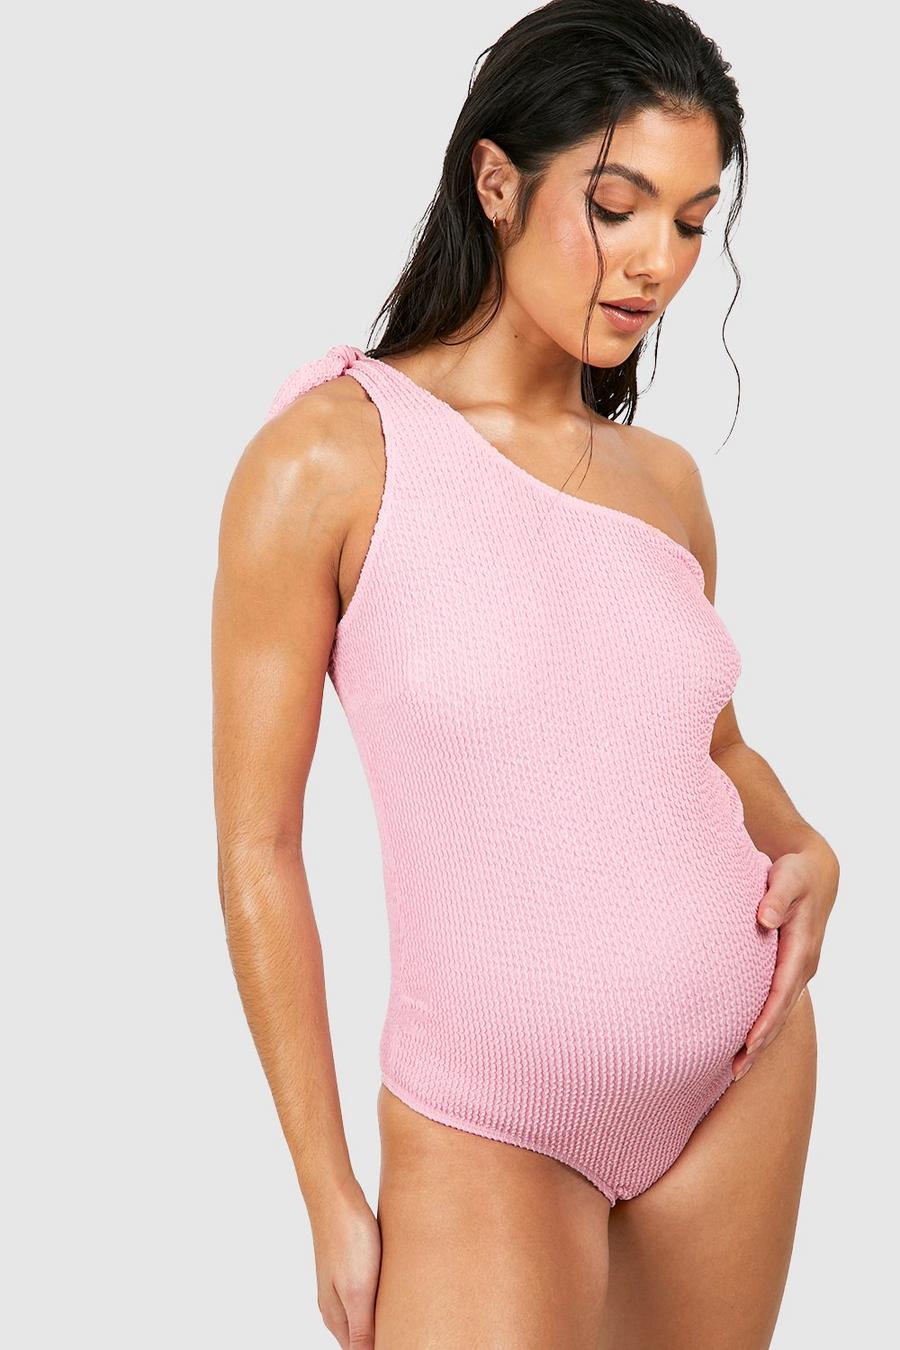 Umstandsmode einärmliger Badeanzug in Knitteroptik, Baby pink